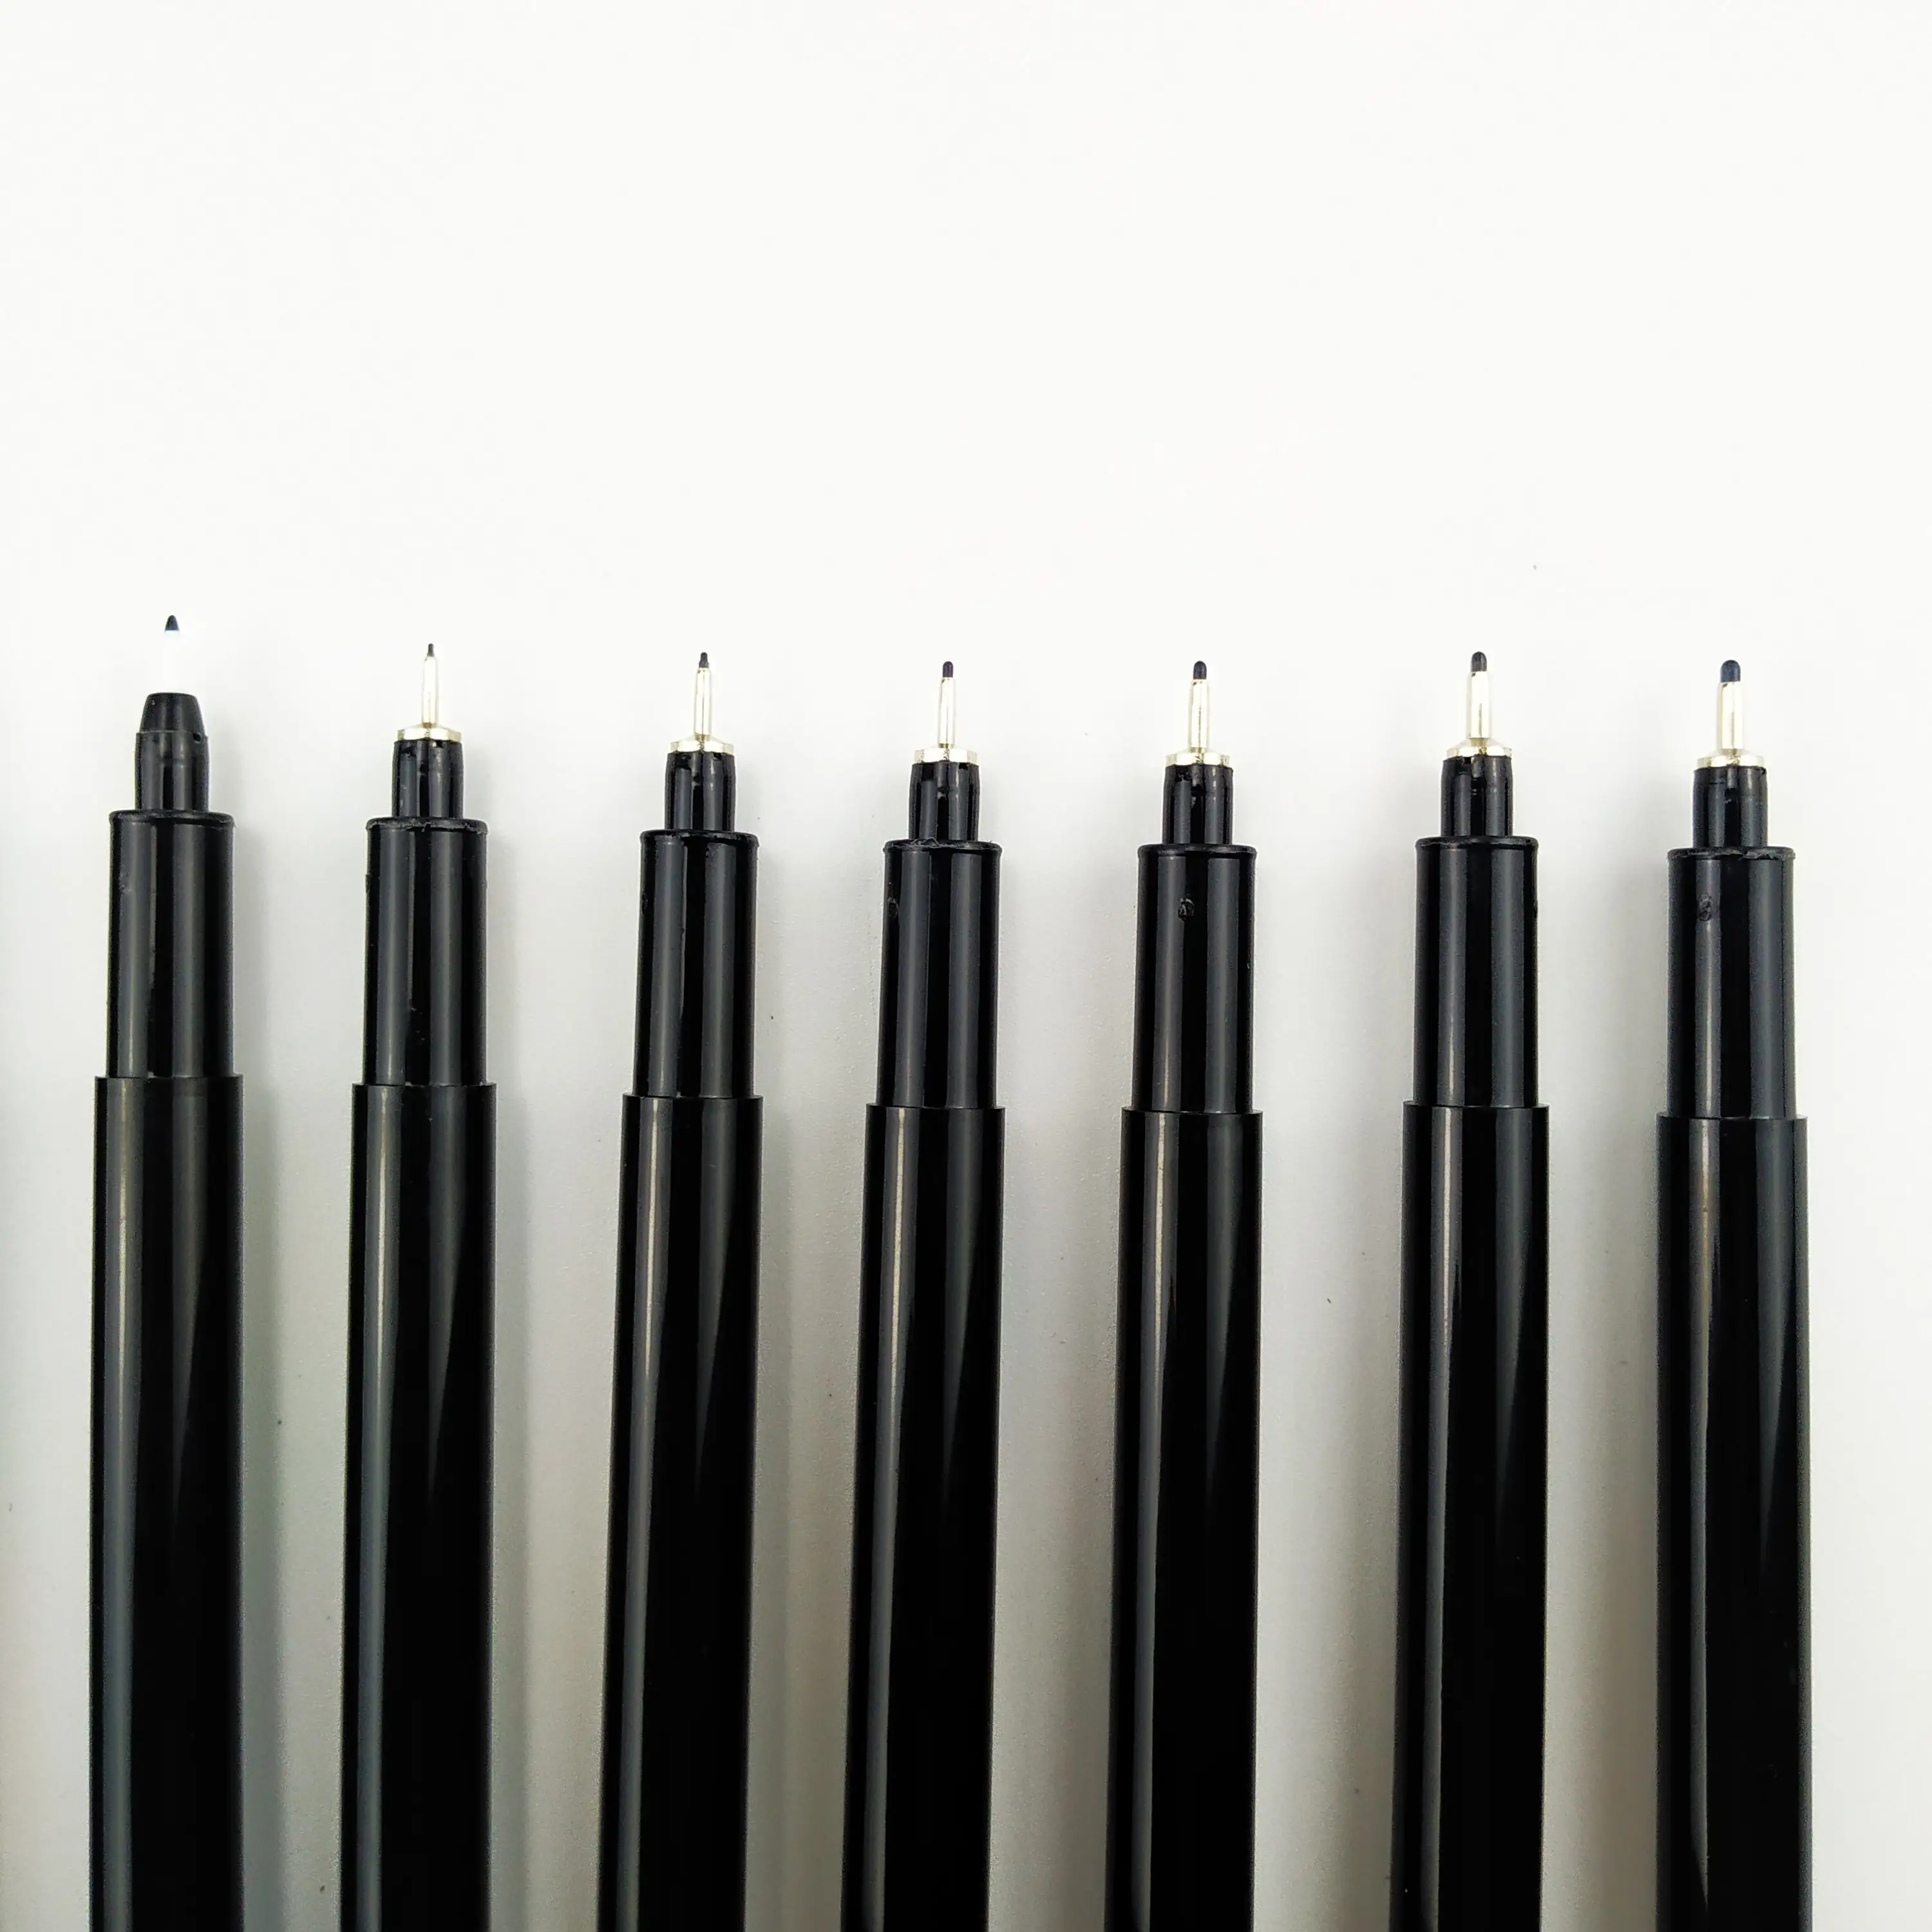 مجموعة أقلام حبر صغيرة, مجموعة من 9 أقلام حبر صغيرة سوداء ، أقلام حبر دقيقة رقيقة ، قلم مايكرو خط مضاد للماء ، حبر أرشيفي متعدد الخطوط ، رسم